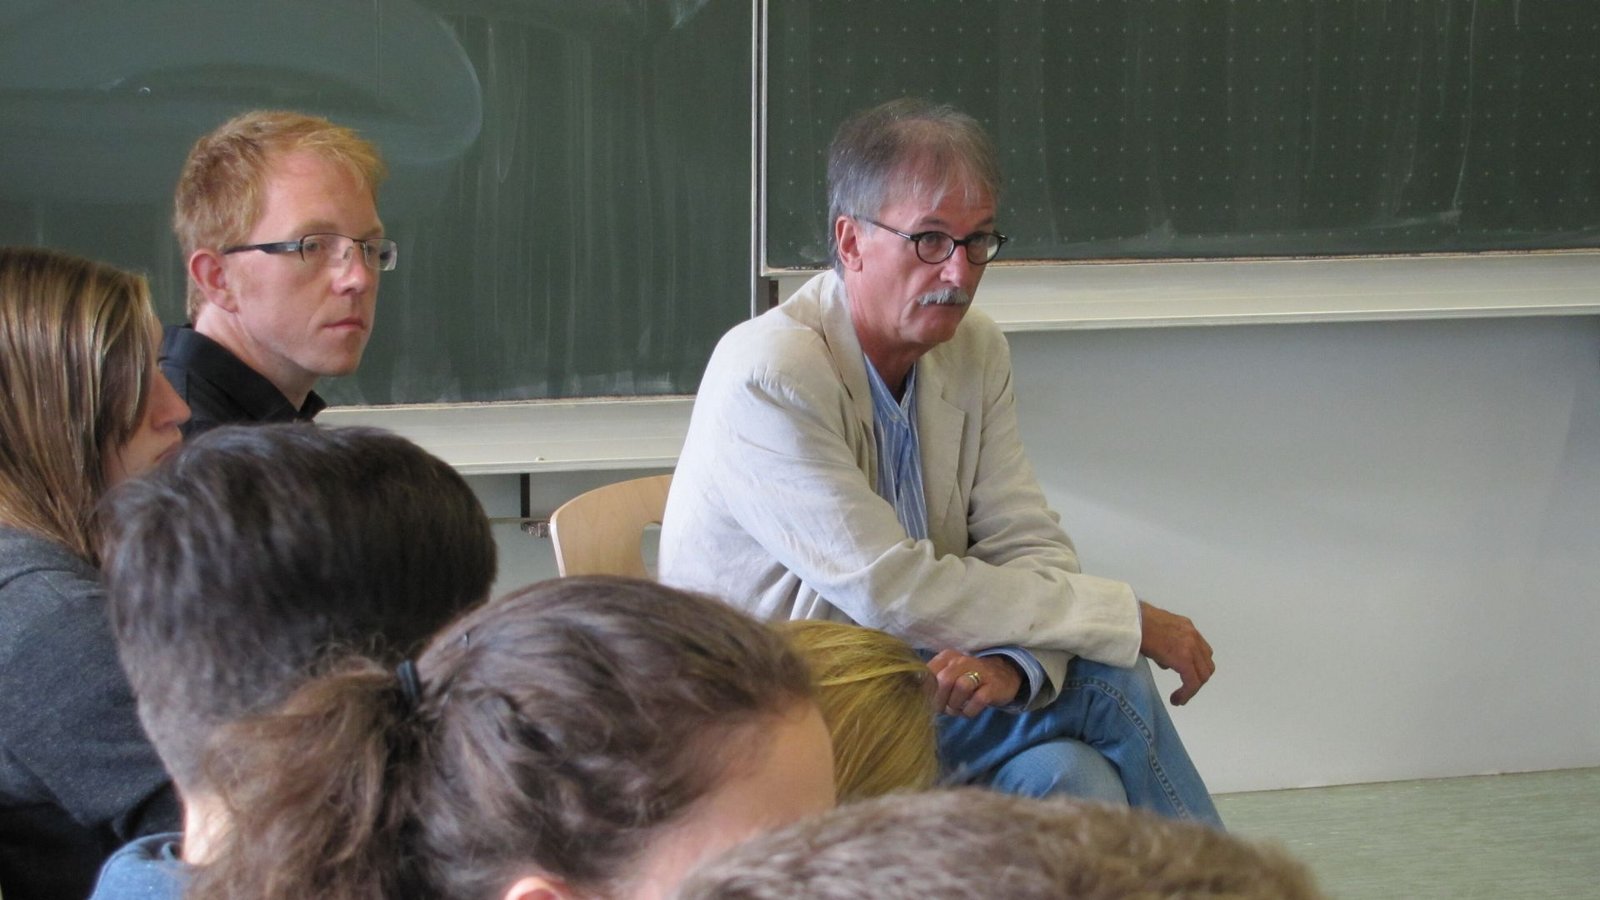 Der Stuttgarter Gefängnispfarrer besucht im Jahr 2014 eine Schule in Stuttgart – natürlich im Religionsunterricht.Foto: Claudia Barner